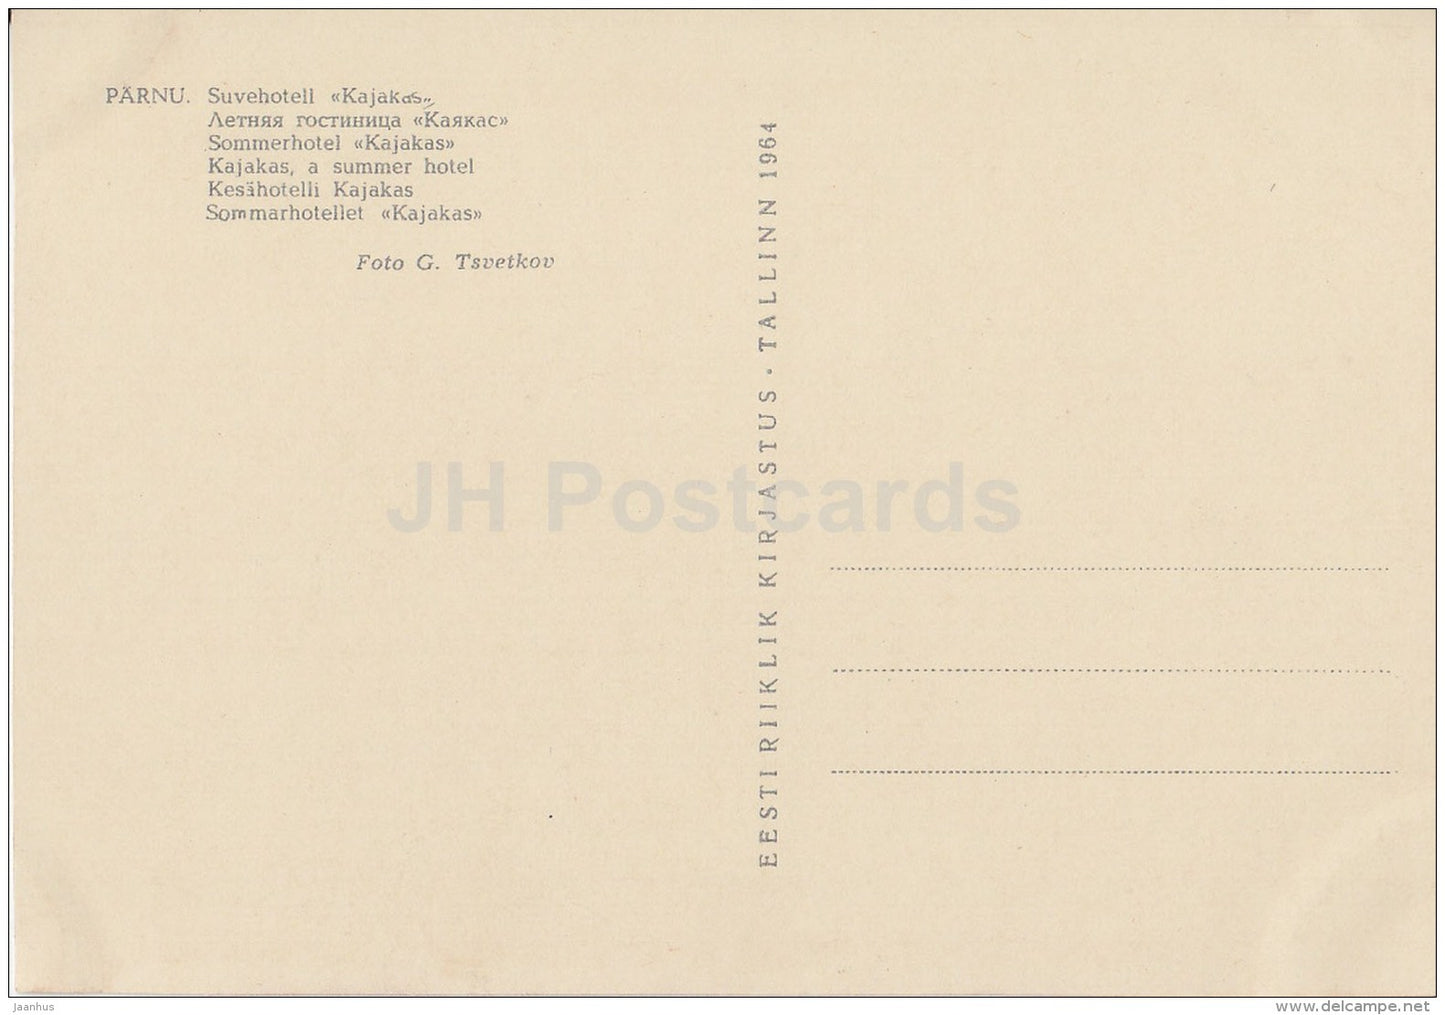 Summer Hotel Kajakas (Seagull) - Pärnu - 1964 - Estonia USSR - unused - JH Postcards